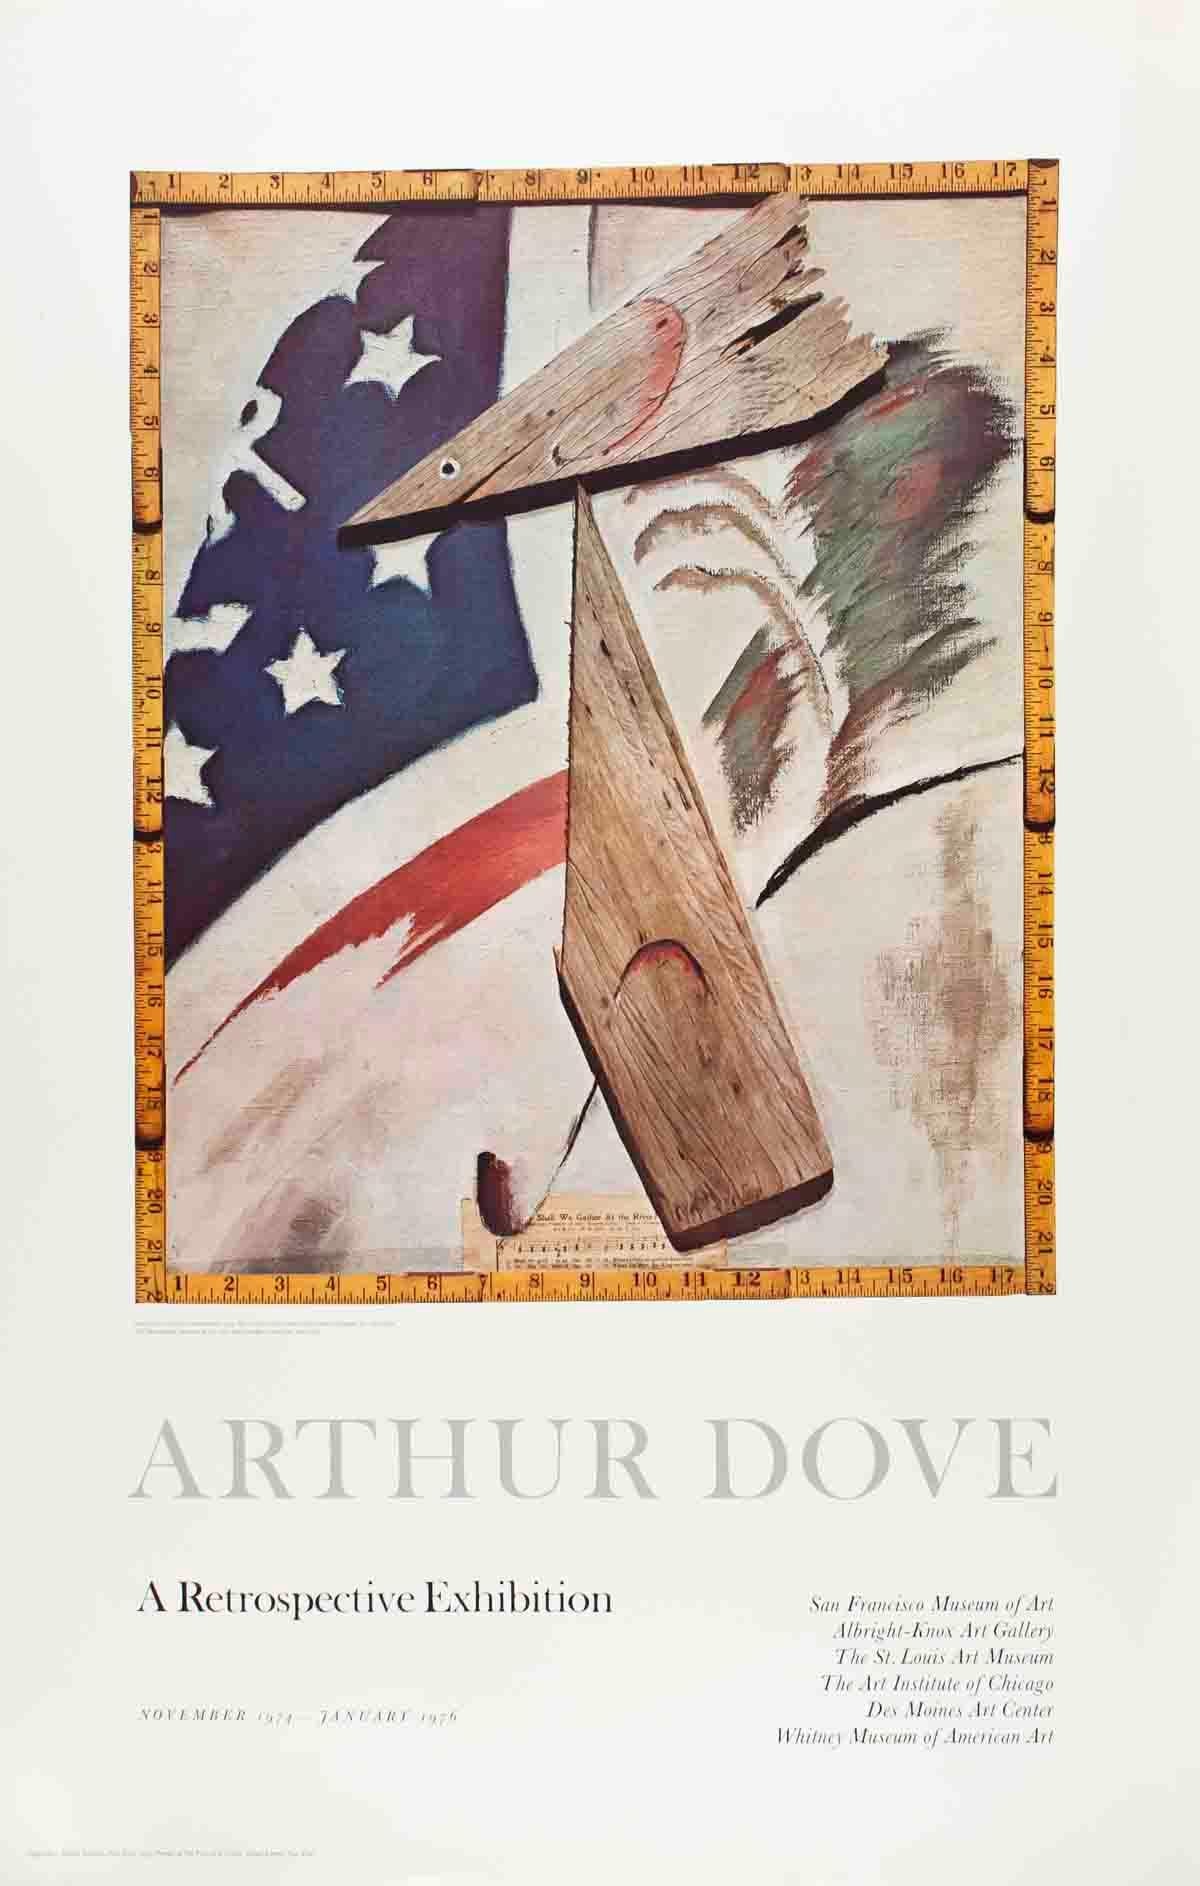 After Arthur Dove-Portrait of Ralph Dusenberry-37" x 24"-Poster-1975-Multicolor 1